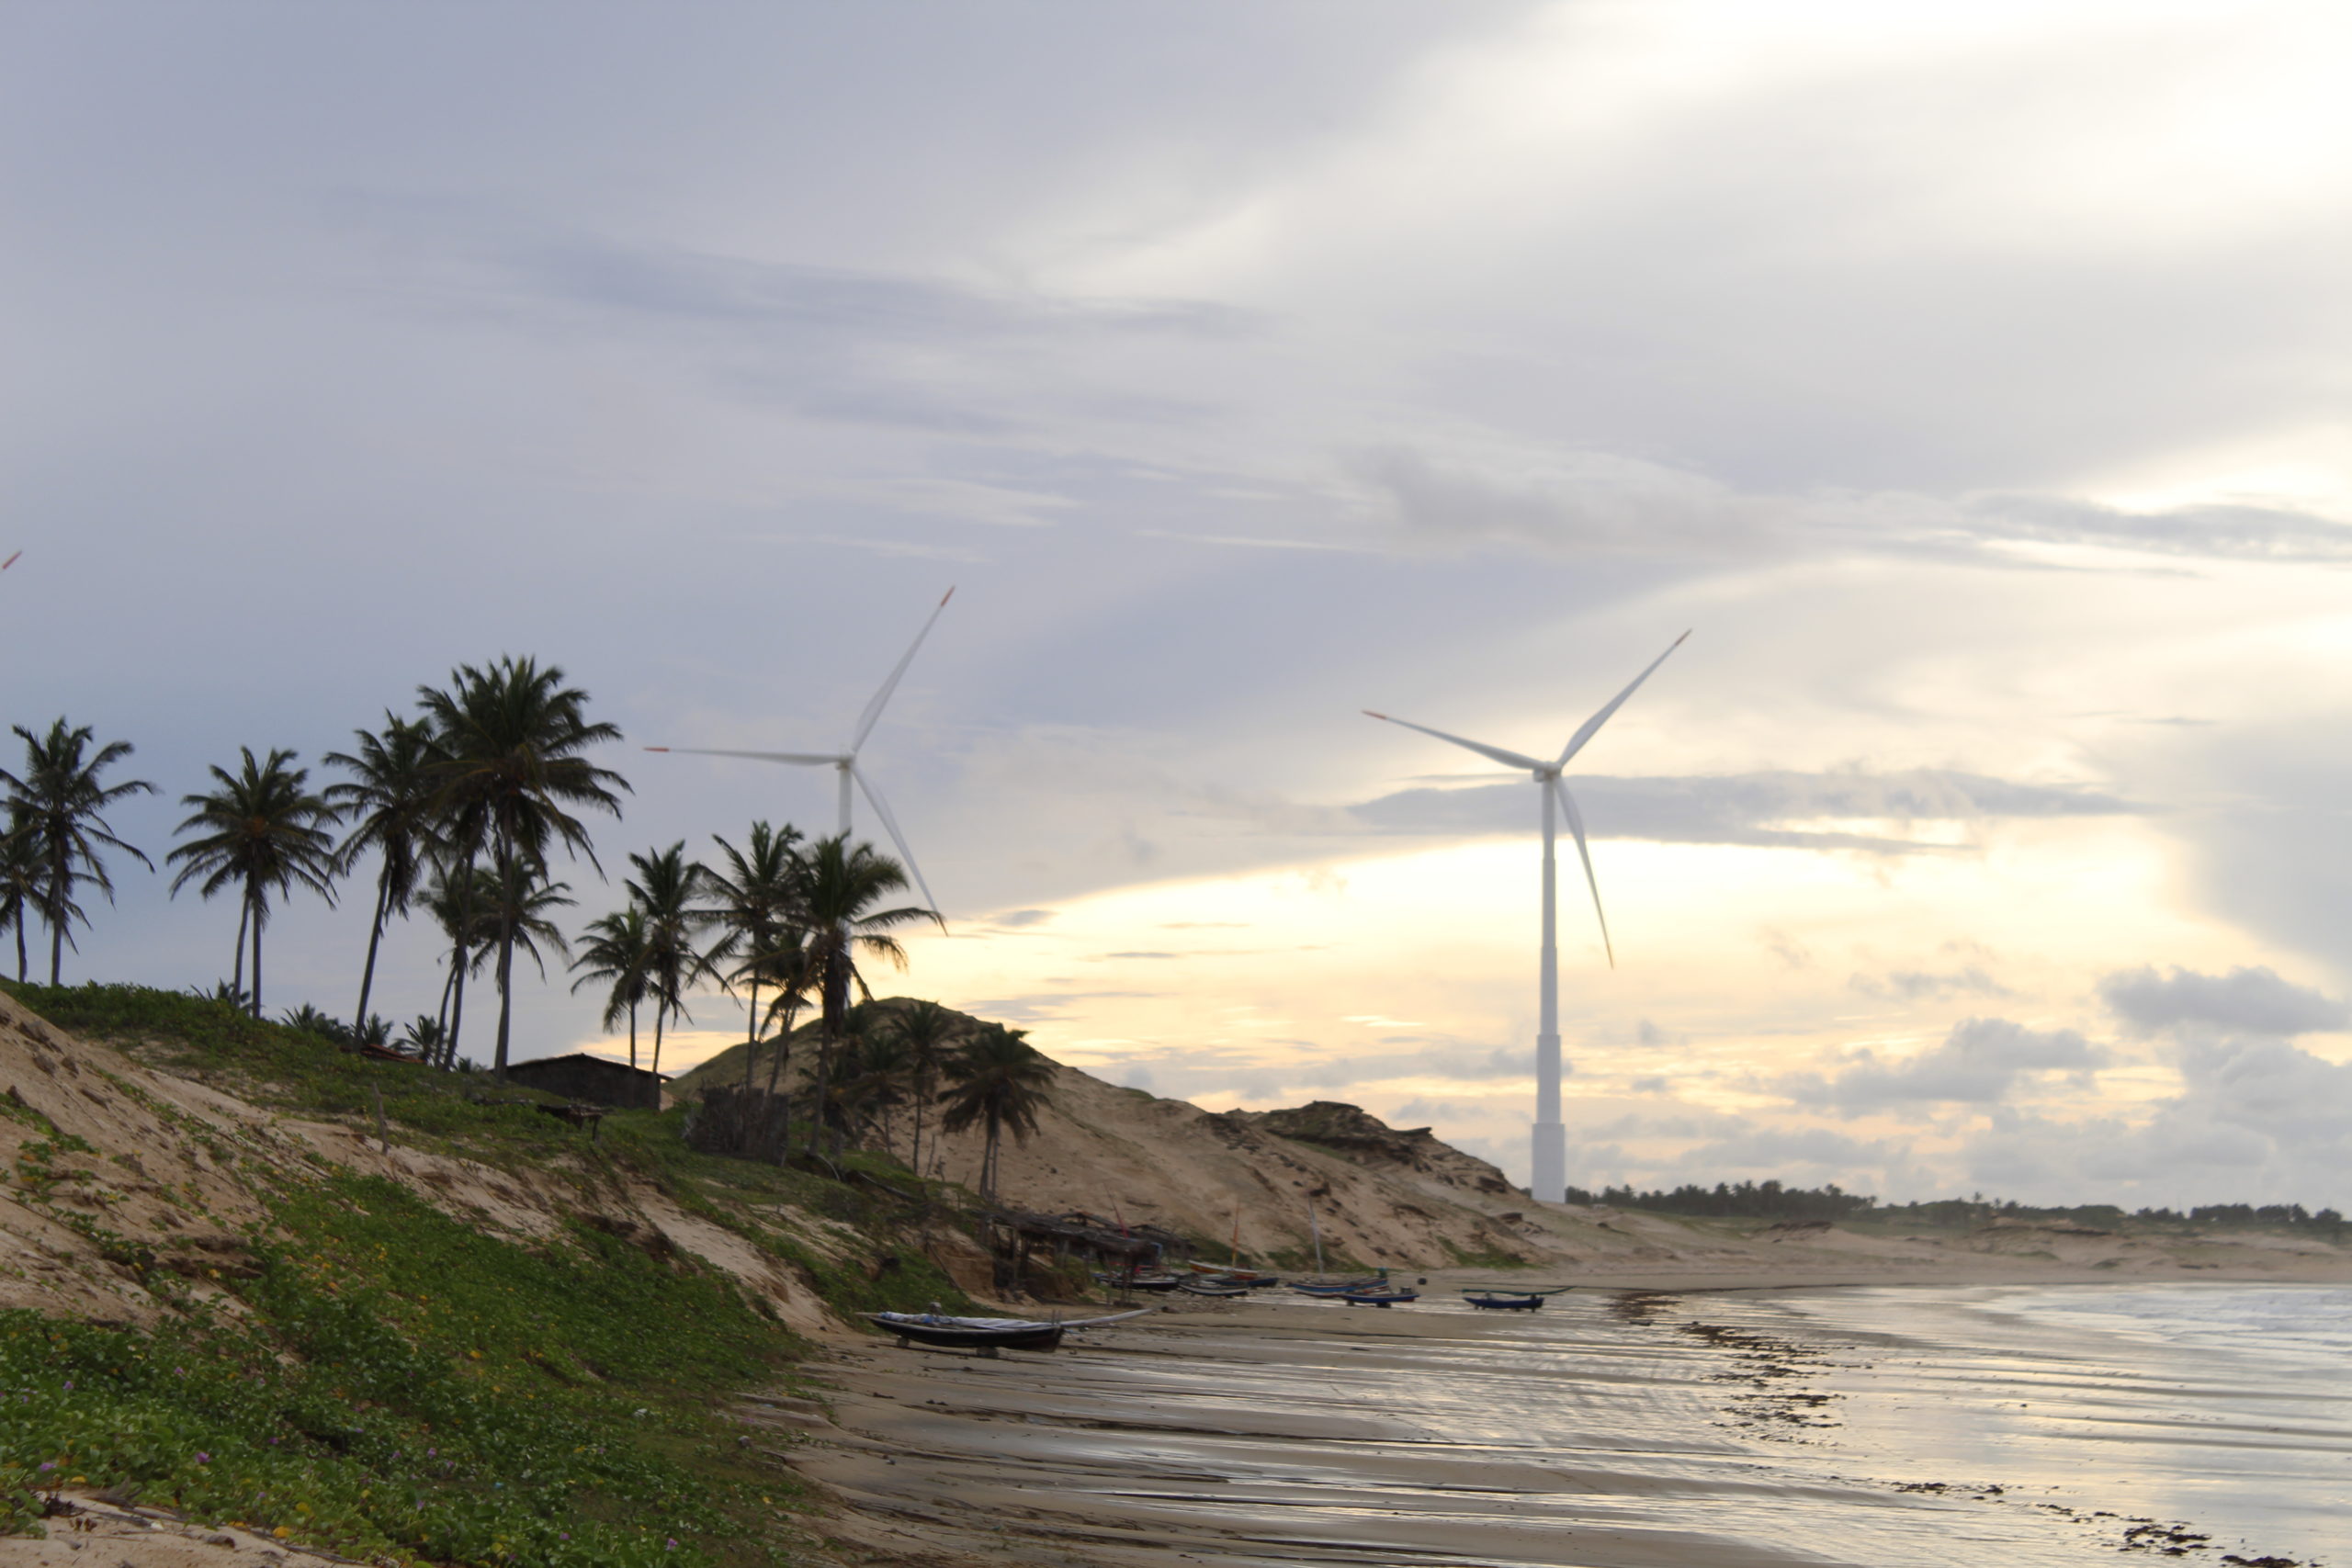 Parque eólico instalado no litoral cearense: comunidades locais lutam por transição energética justa (Foto: Jeferson Batista/Conectas)